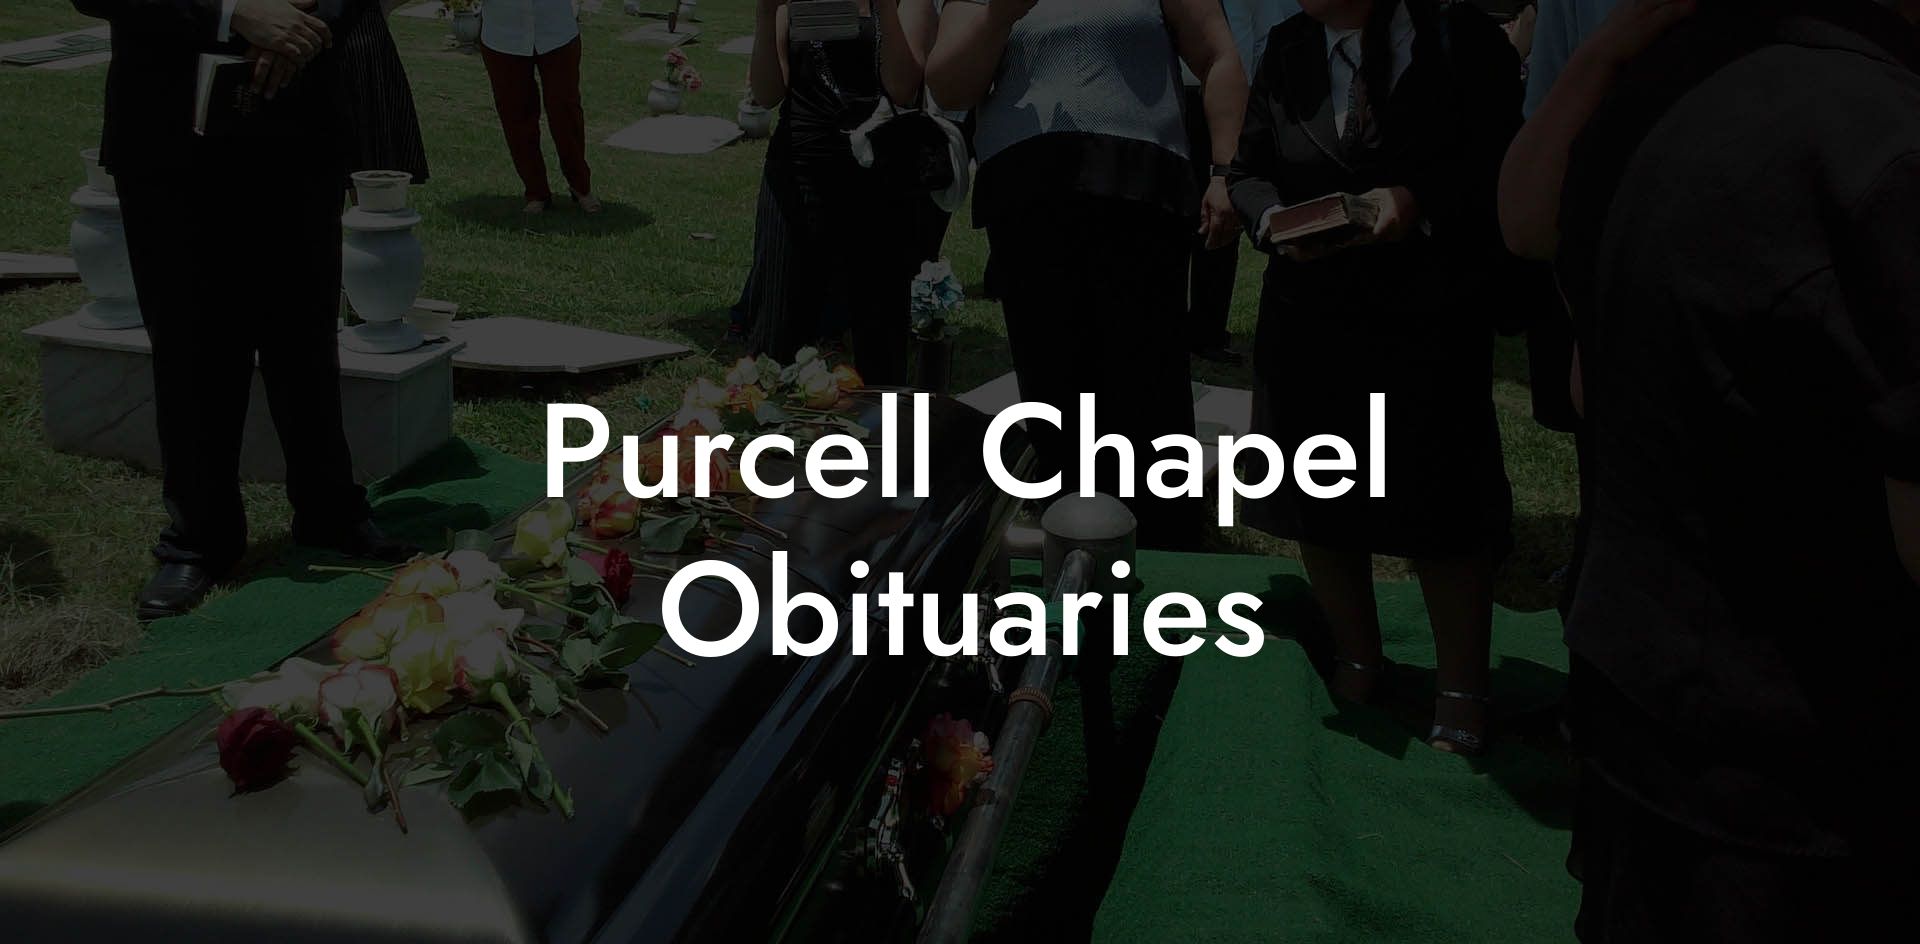 Purcell Chapel Obituaries